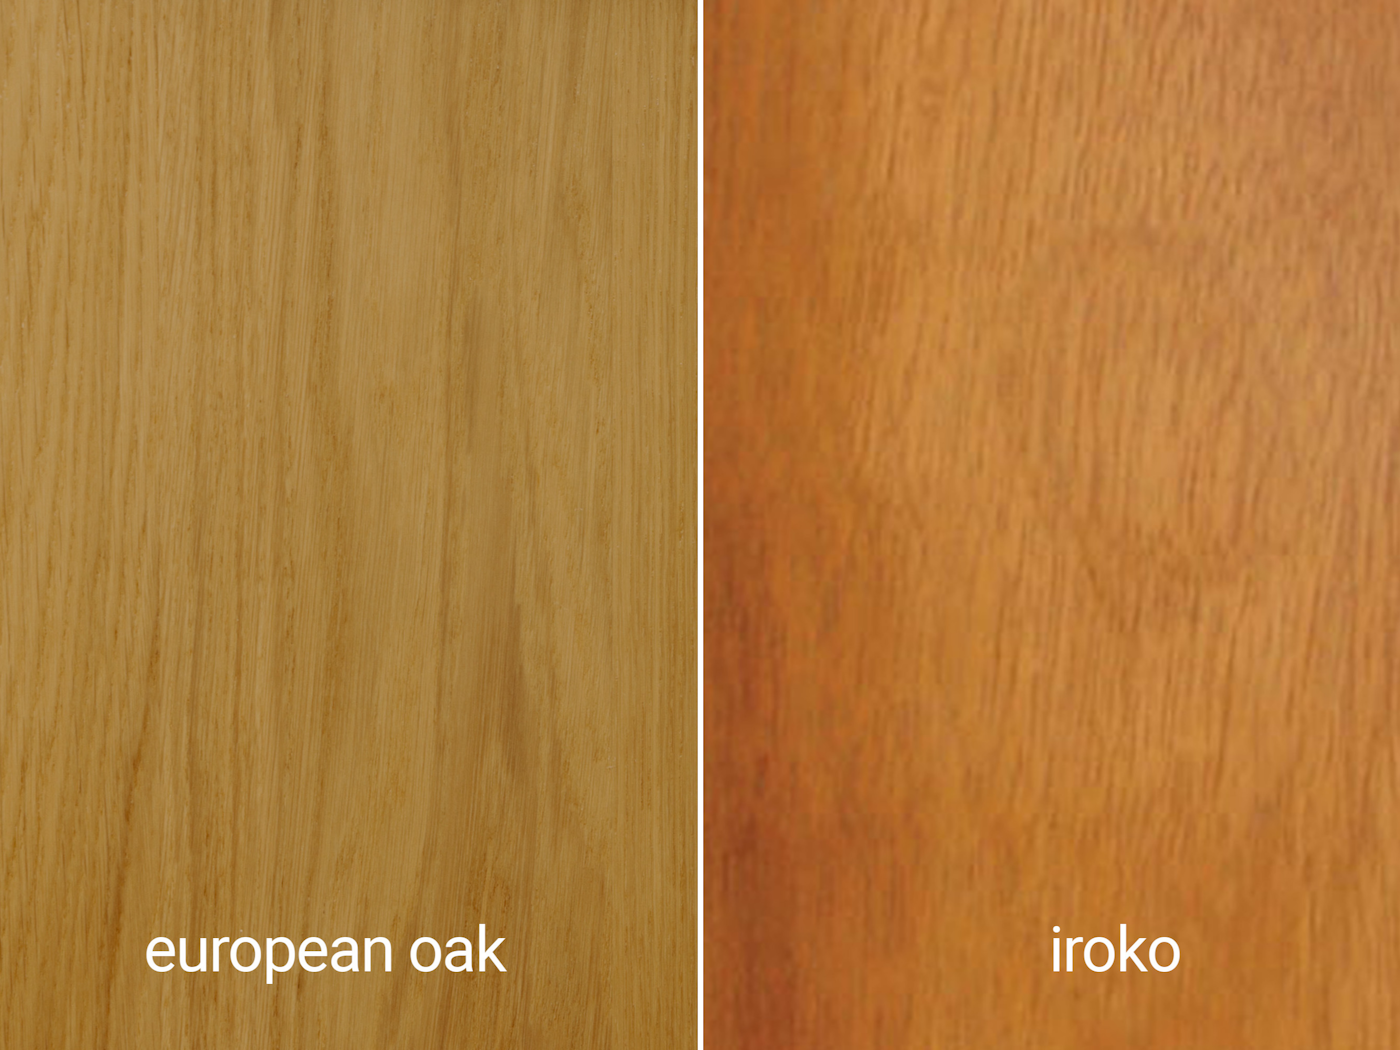 european oak and iroko...